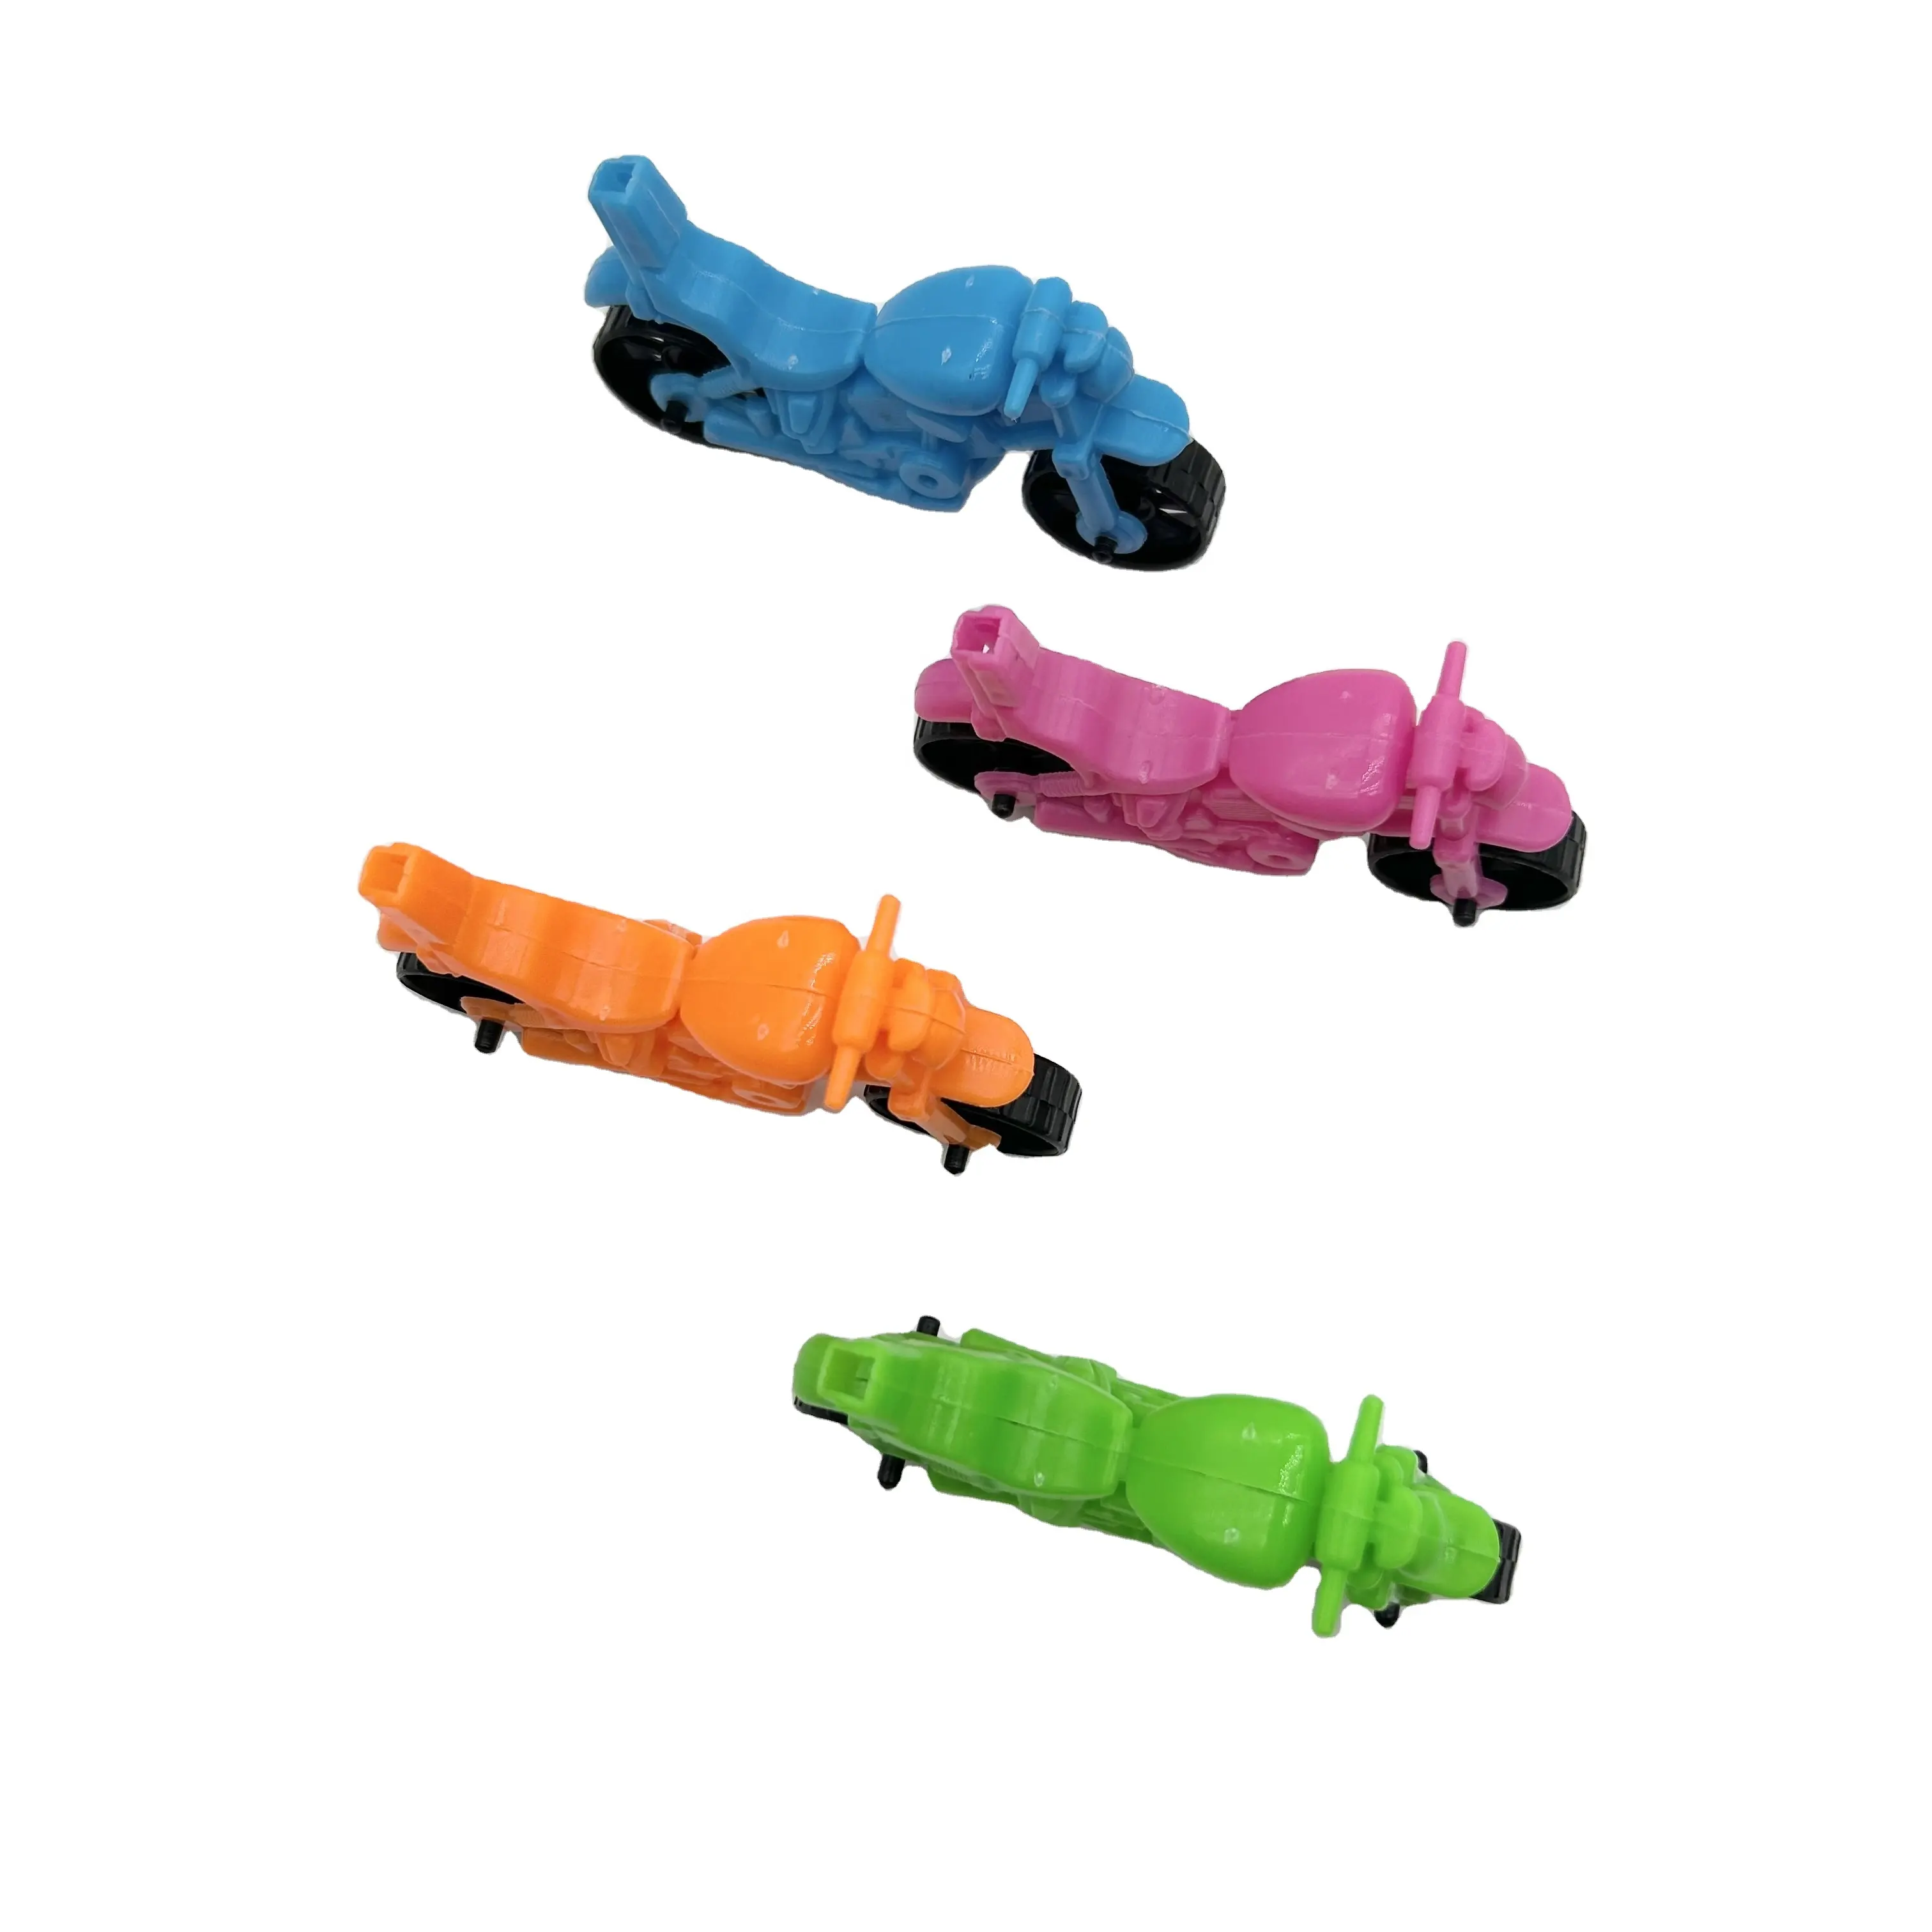 व्हिसल प्रोमोशनल बच्चों के उपहार के साथ क्लासिक 4-रंग कैंडी खिलौना मोटर बाइक मिनी मोटरसाइकिल